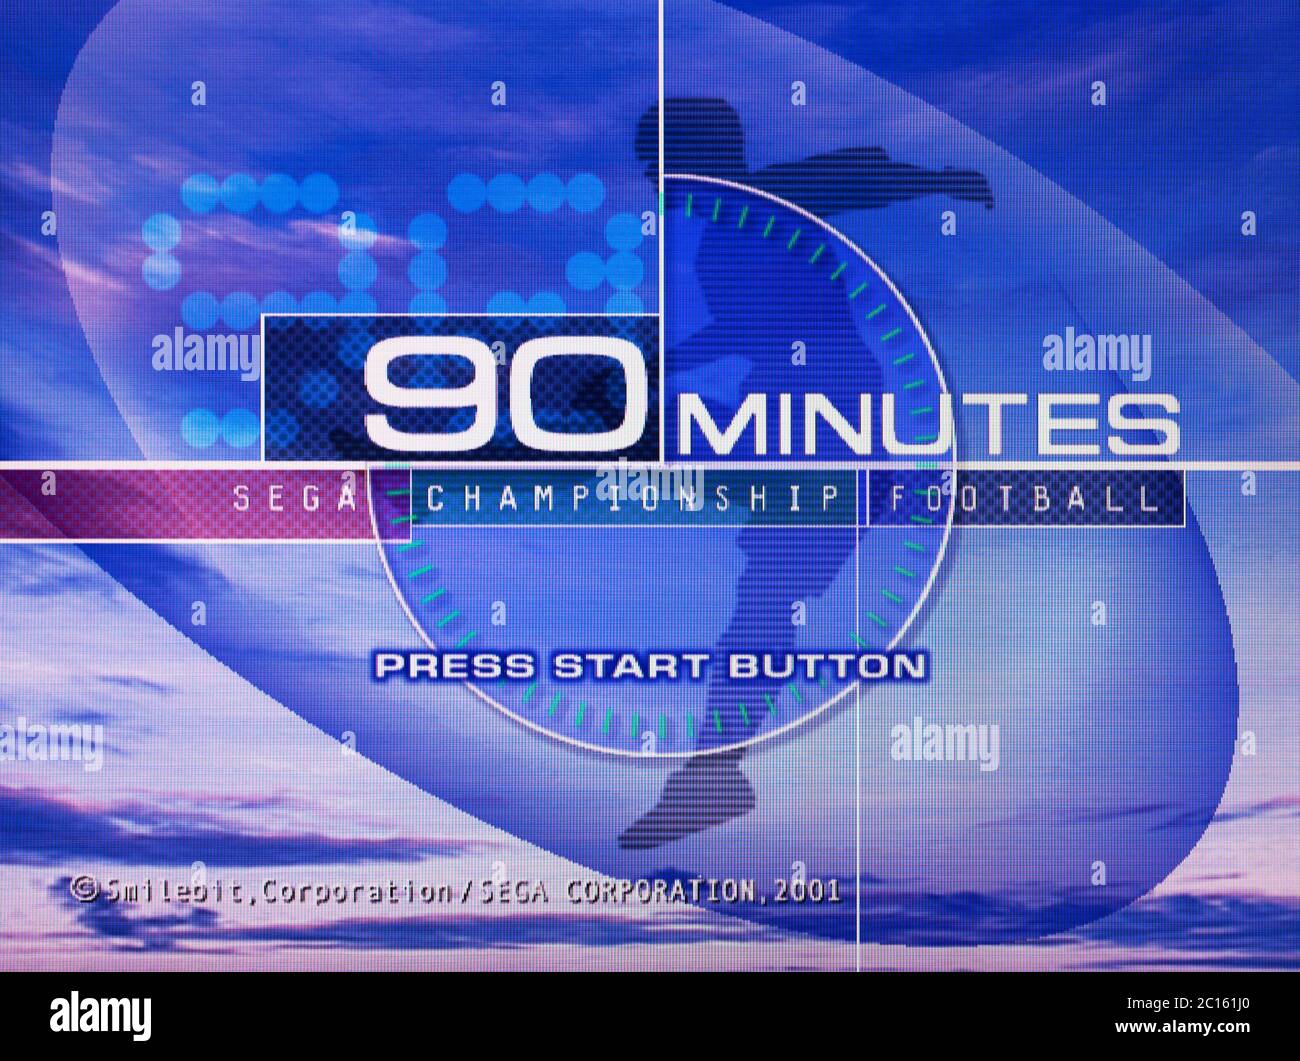 Championnat de football de 90 minutes - Sega Dreamcast Videogame - usage éditorial uniquement Banque D'Images